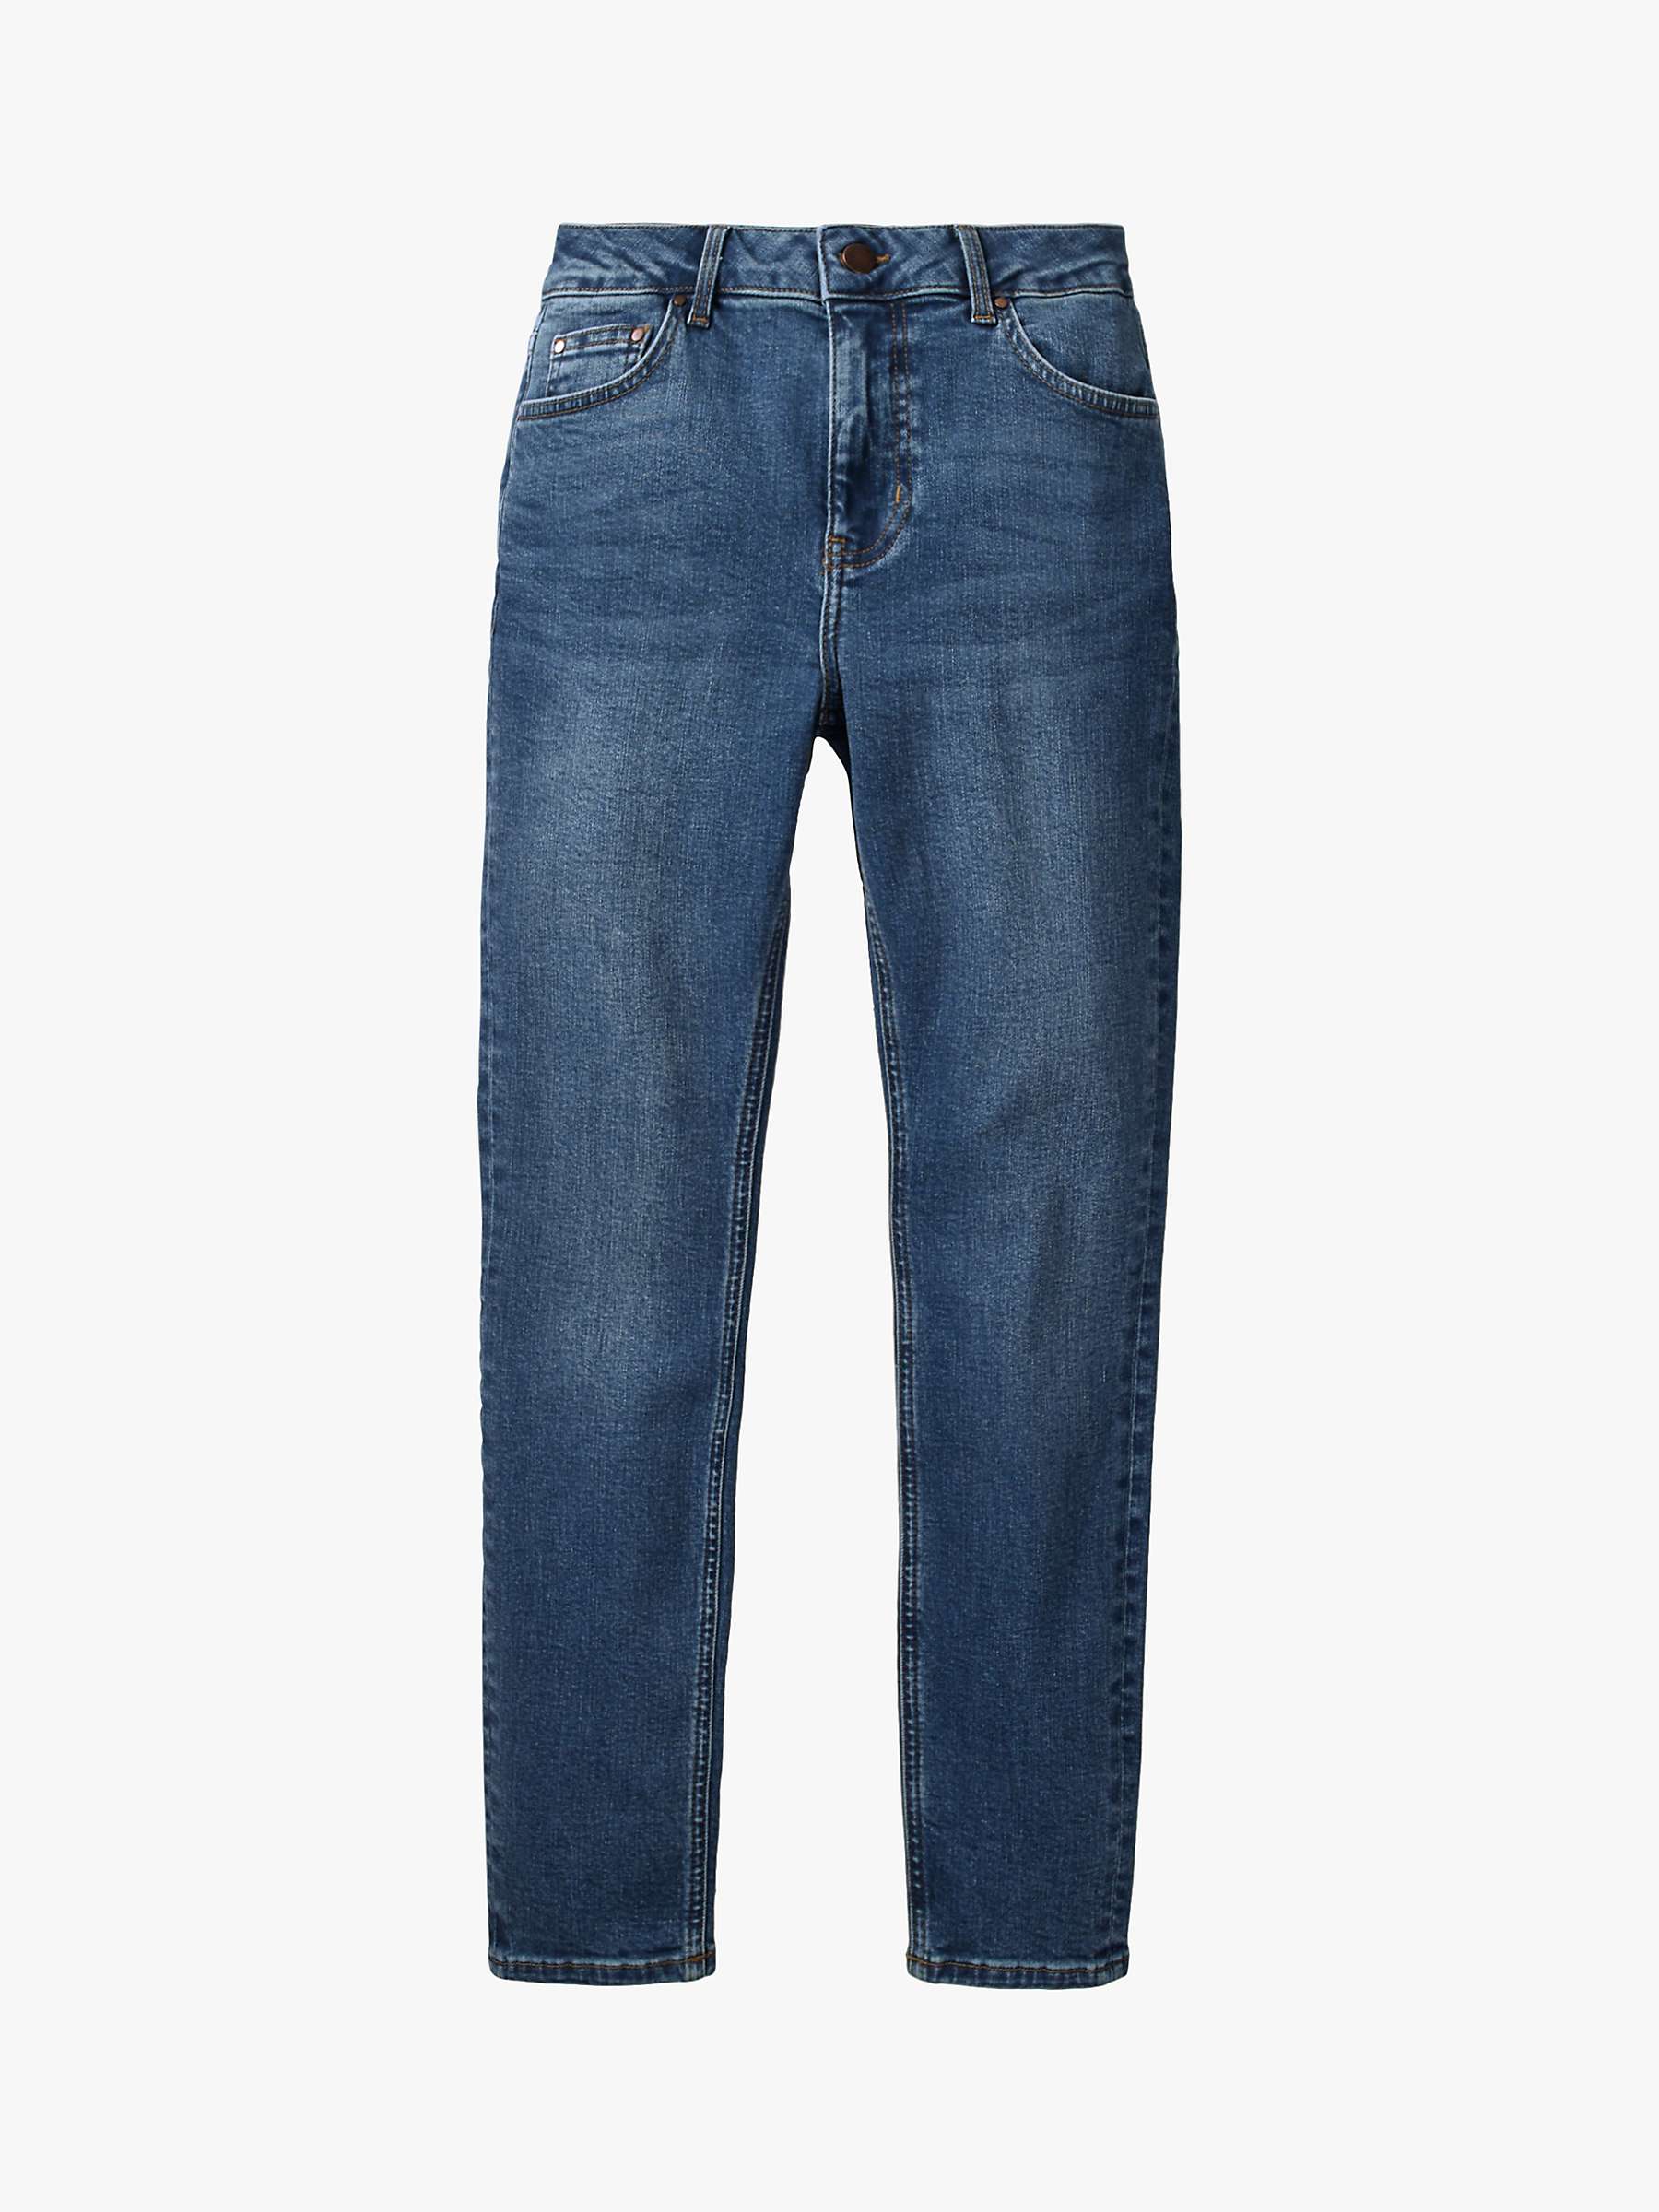 Buy Boden Skinny Jeans, Mid Vintage Online at johnlewis.com